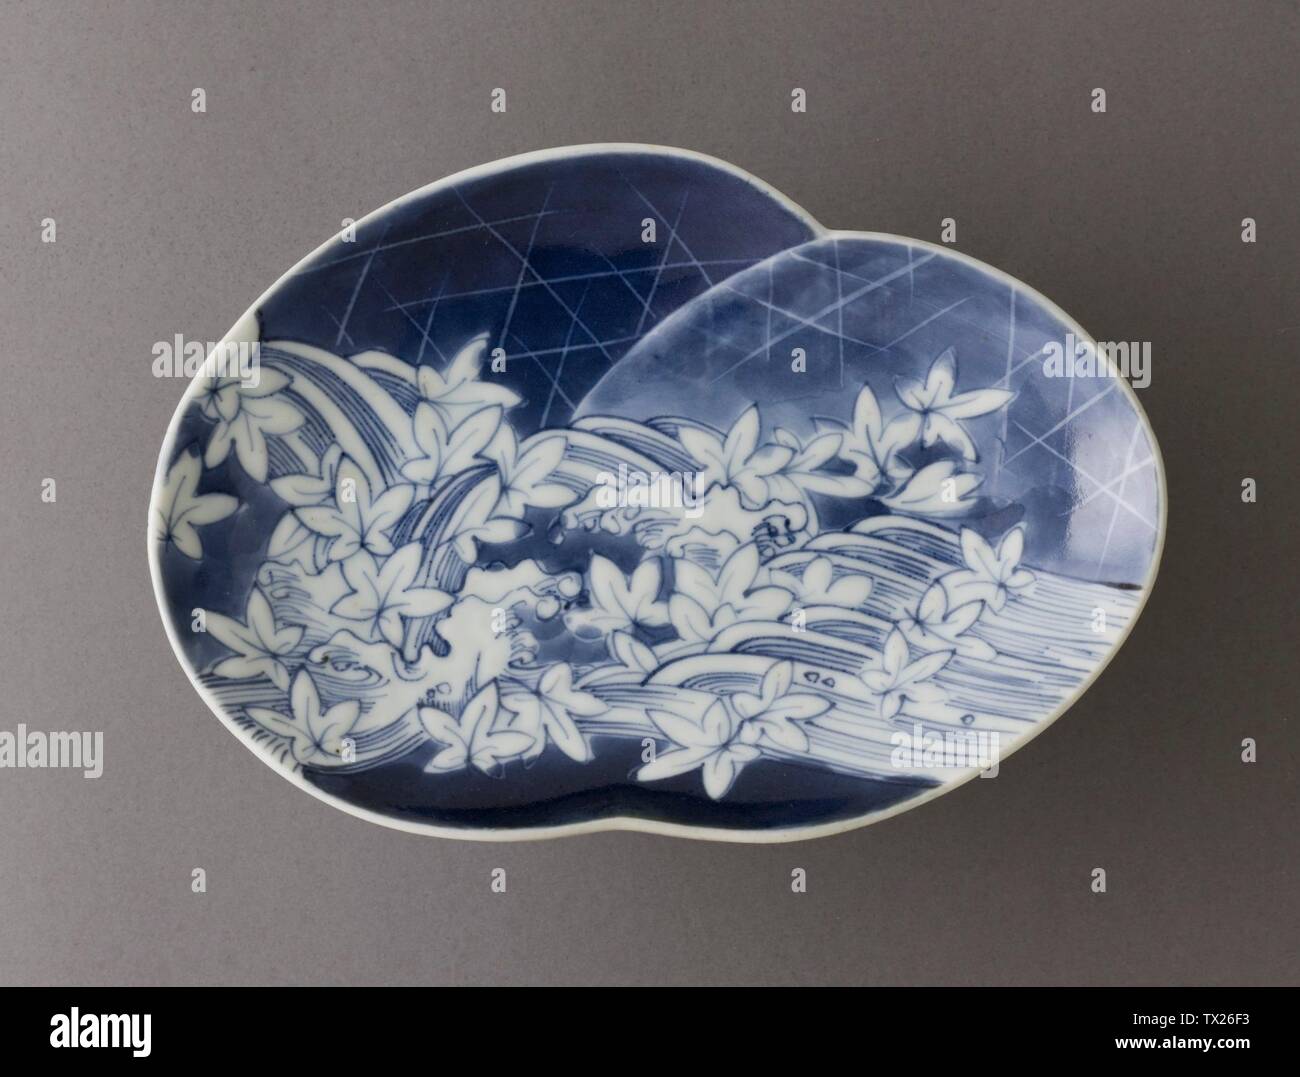 Plato con diseño de río, Coros y Hojas de arce; Japón, Mobiliario de unos 1650s a 1670s; utensilios de cocina Arita; porcelana con azul vidriado 1 1/16 x 6 1/4 x 4 3/8 pulgadas. (2.7 x 15.88 x 11.11 cm) Japanese Art Acquisition Fund (M.147.175) Japanese Art; circa 1650 fecha QS:P571,+1650-00-00T00:00:00Z/9,P1480,Q5727902s-1670s; Foto de stock